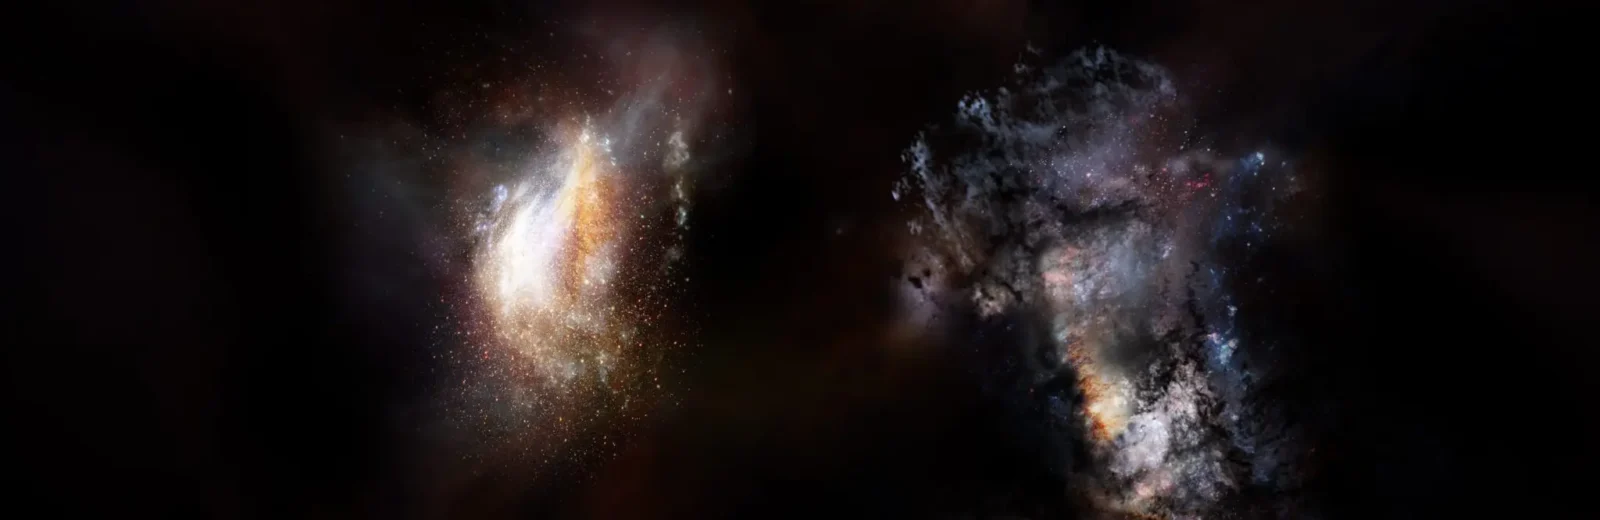 大昔の宇宙で見つかった巨大銀河 